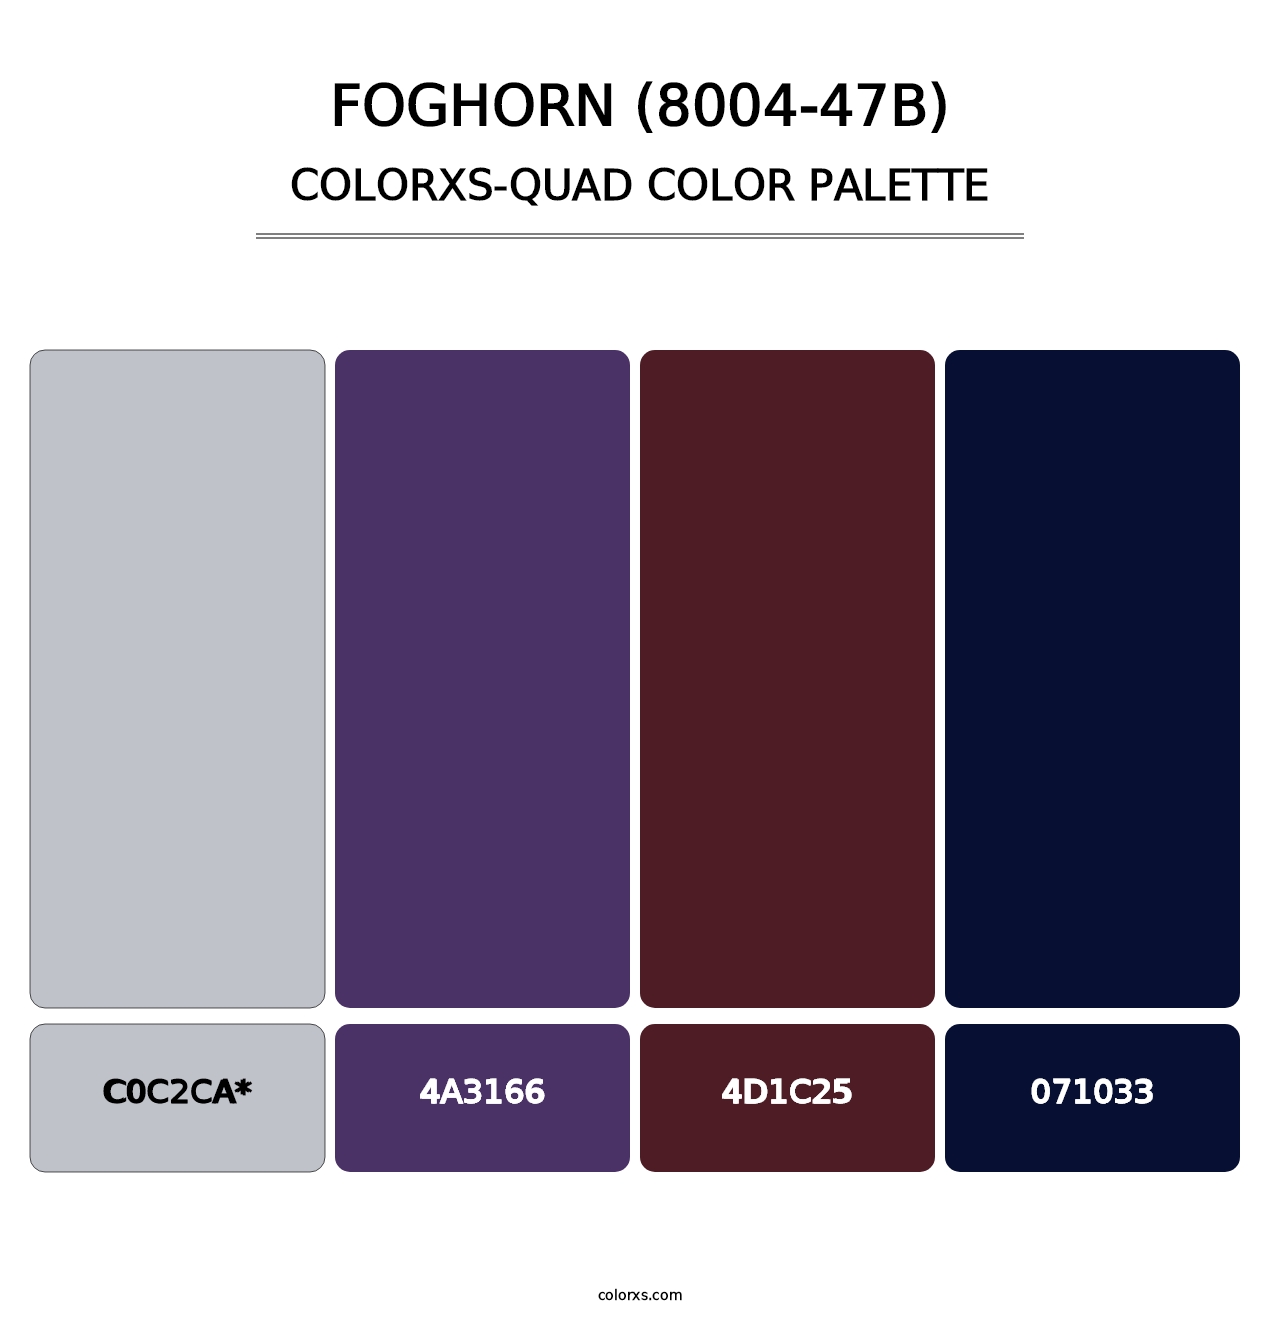 Foghorn (8004-47B) - Colorxs Quad Palette